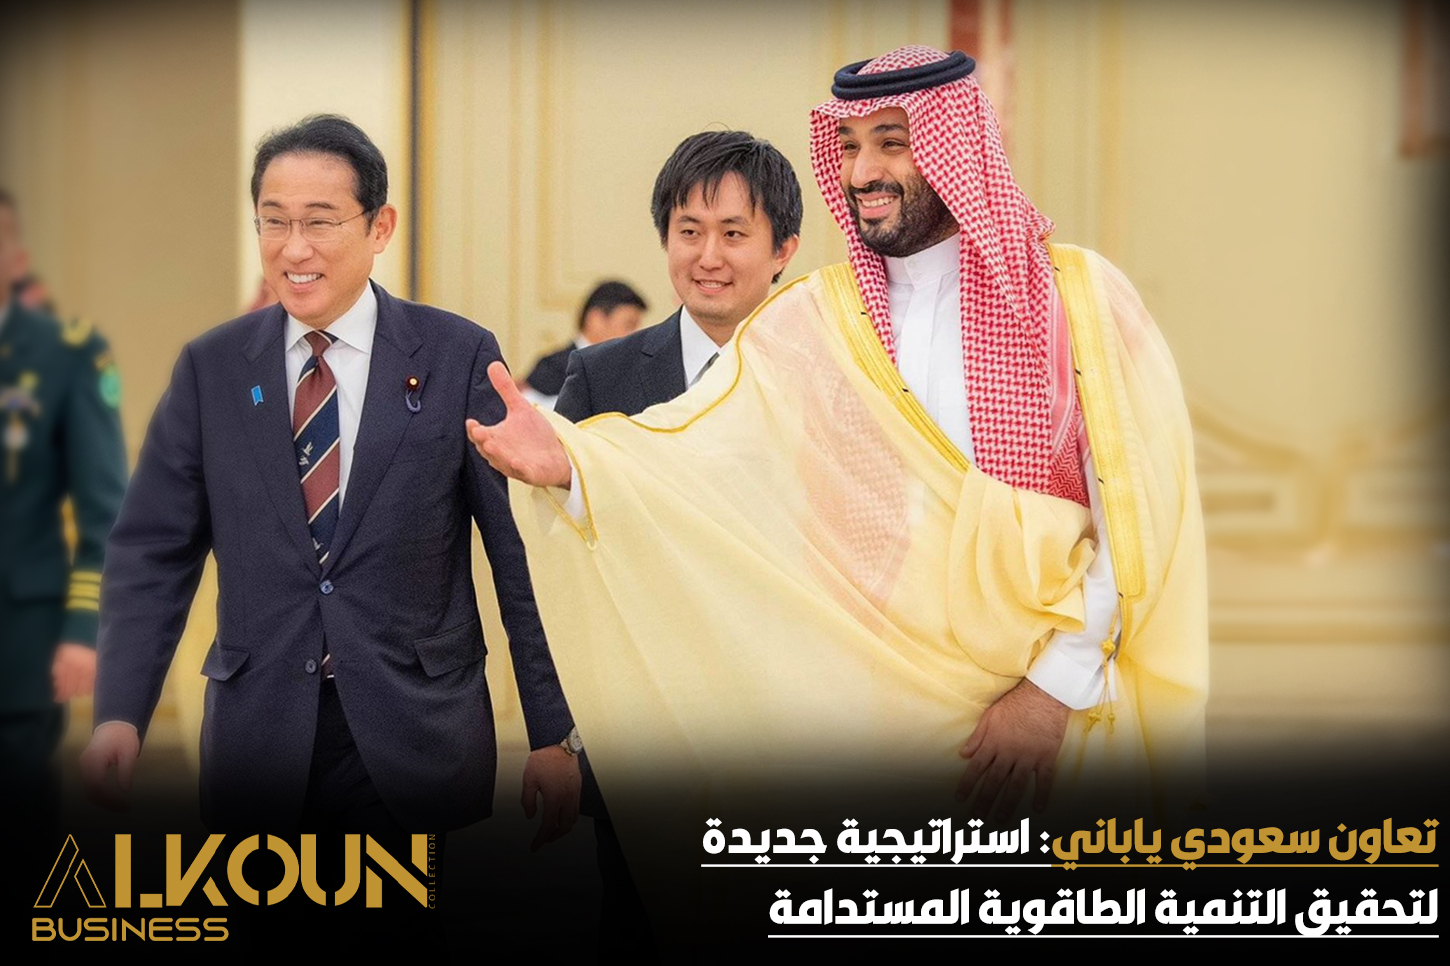 تعاون سعودي ياباني: استراتيجية جديدة لتحقيق التنمية الطاقوية المستدامة